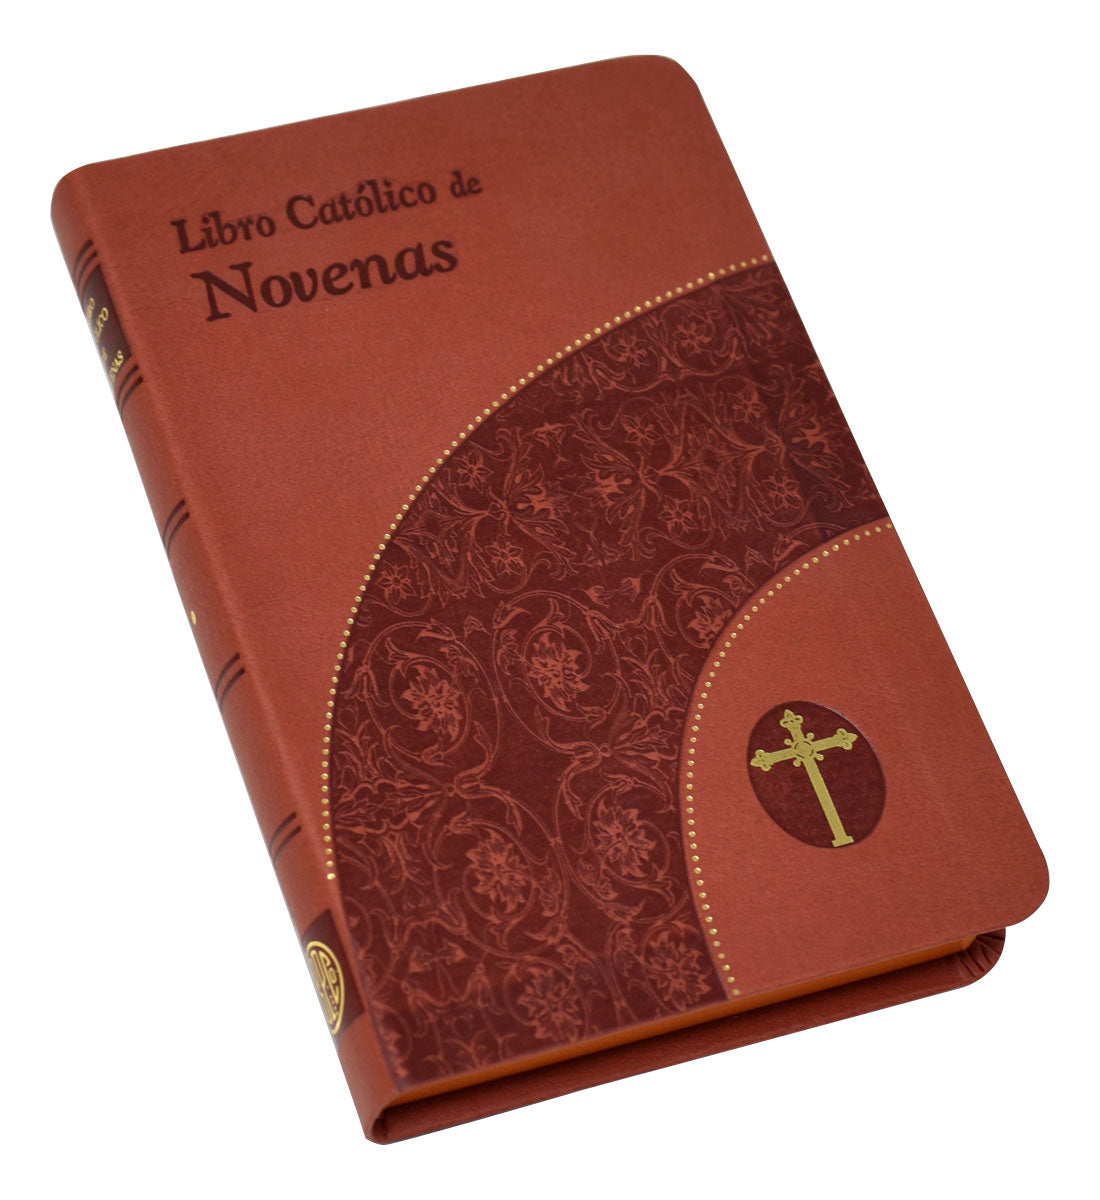 Libro Catolico De Novenas